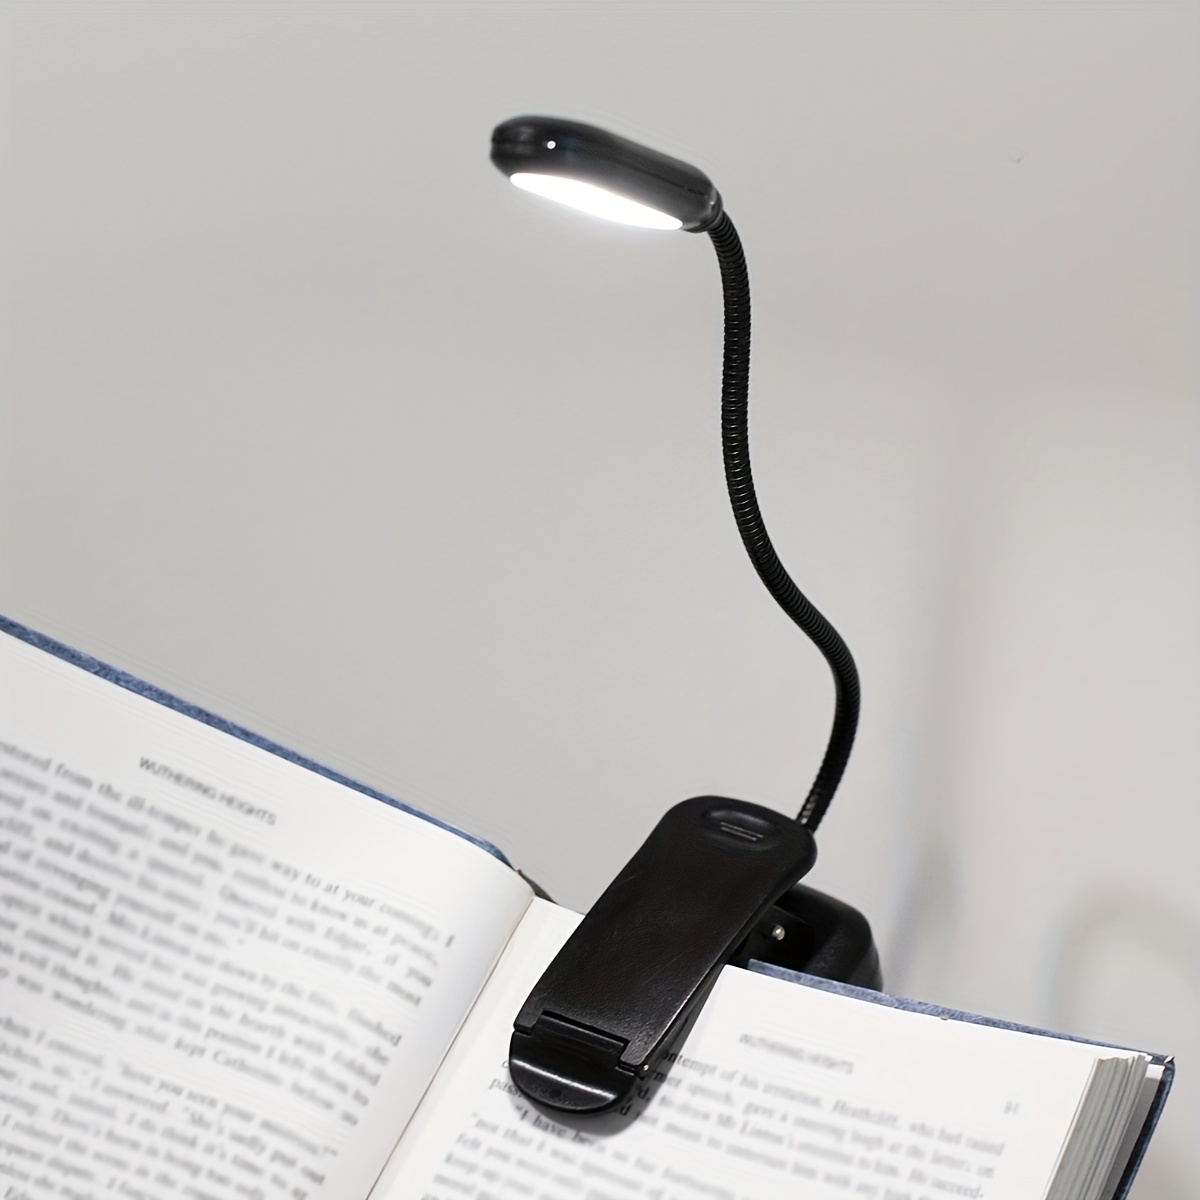  Luz de lectura, luces de lectura para libros en la cama,  lámpara de lectura, luz de libro, luz de libro para leer en la cama,  lámpara de escritorio, luz de clip